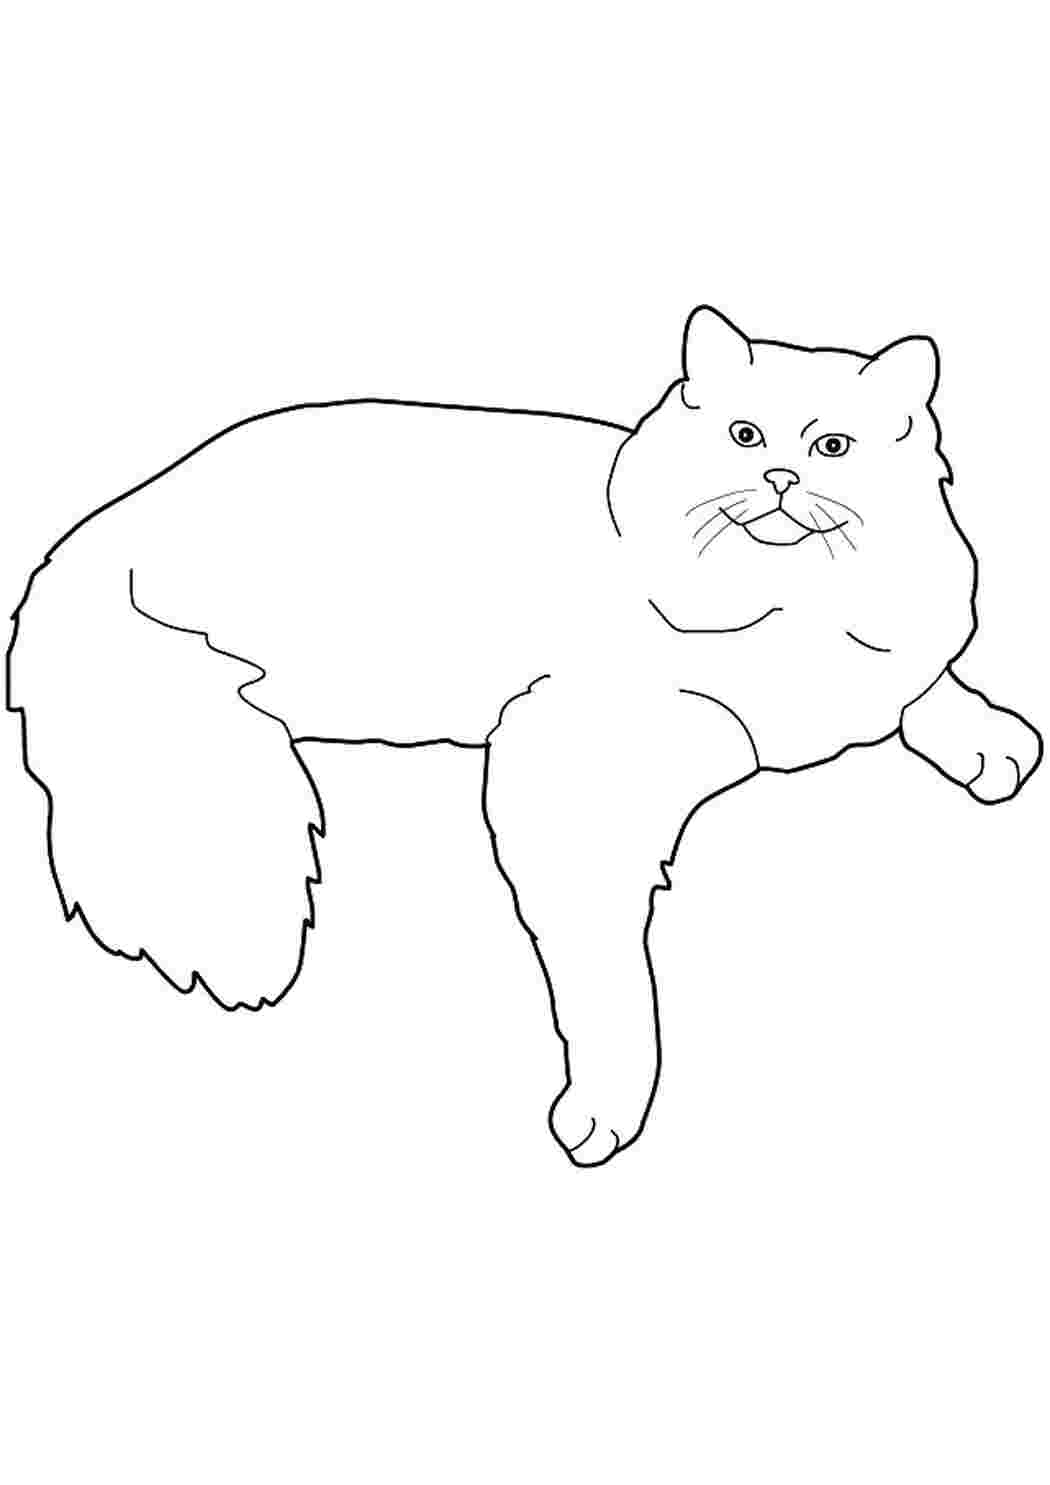 Контур скопировать. Кошка рисунок. Раскраска кот. Трафарет котика для рисования. Кот рисунок раскраска.